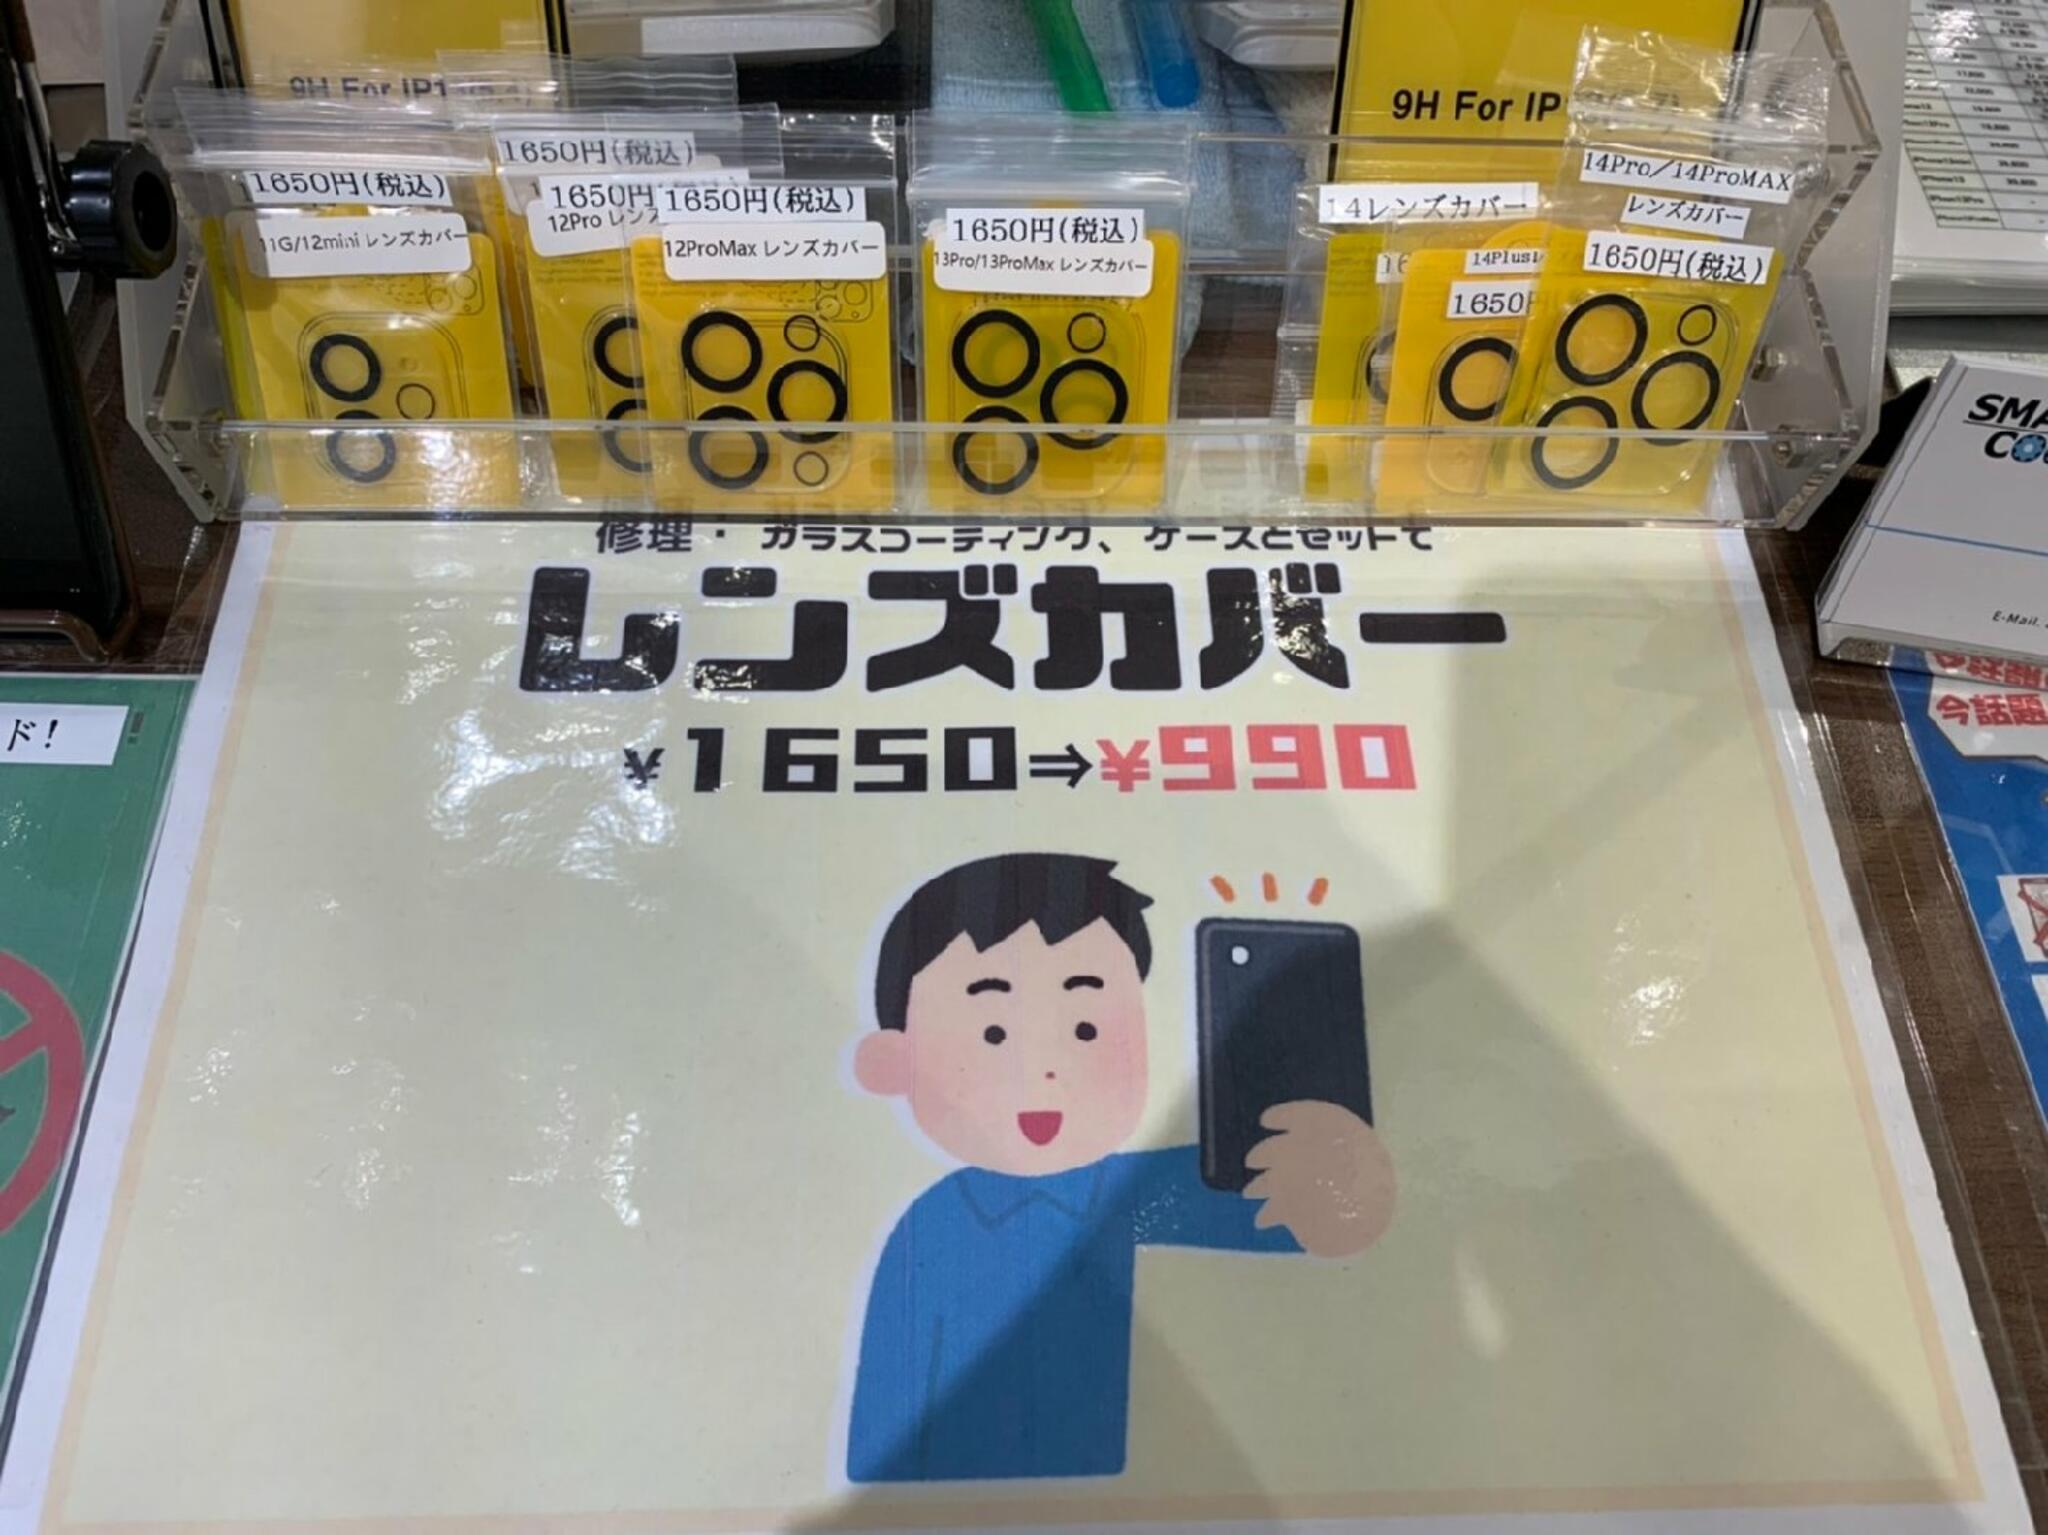 iPhone・iPad・Switch修理店 スマートクール イオンモール広島祇園店からのお知らせ(カメラレンズの保護にカメラレンズカバー はいかがですか？)に関する写真